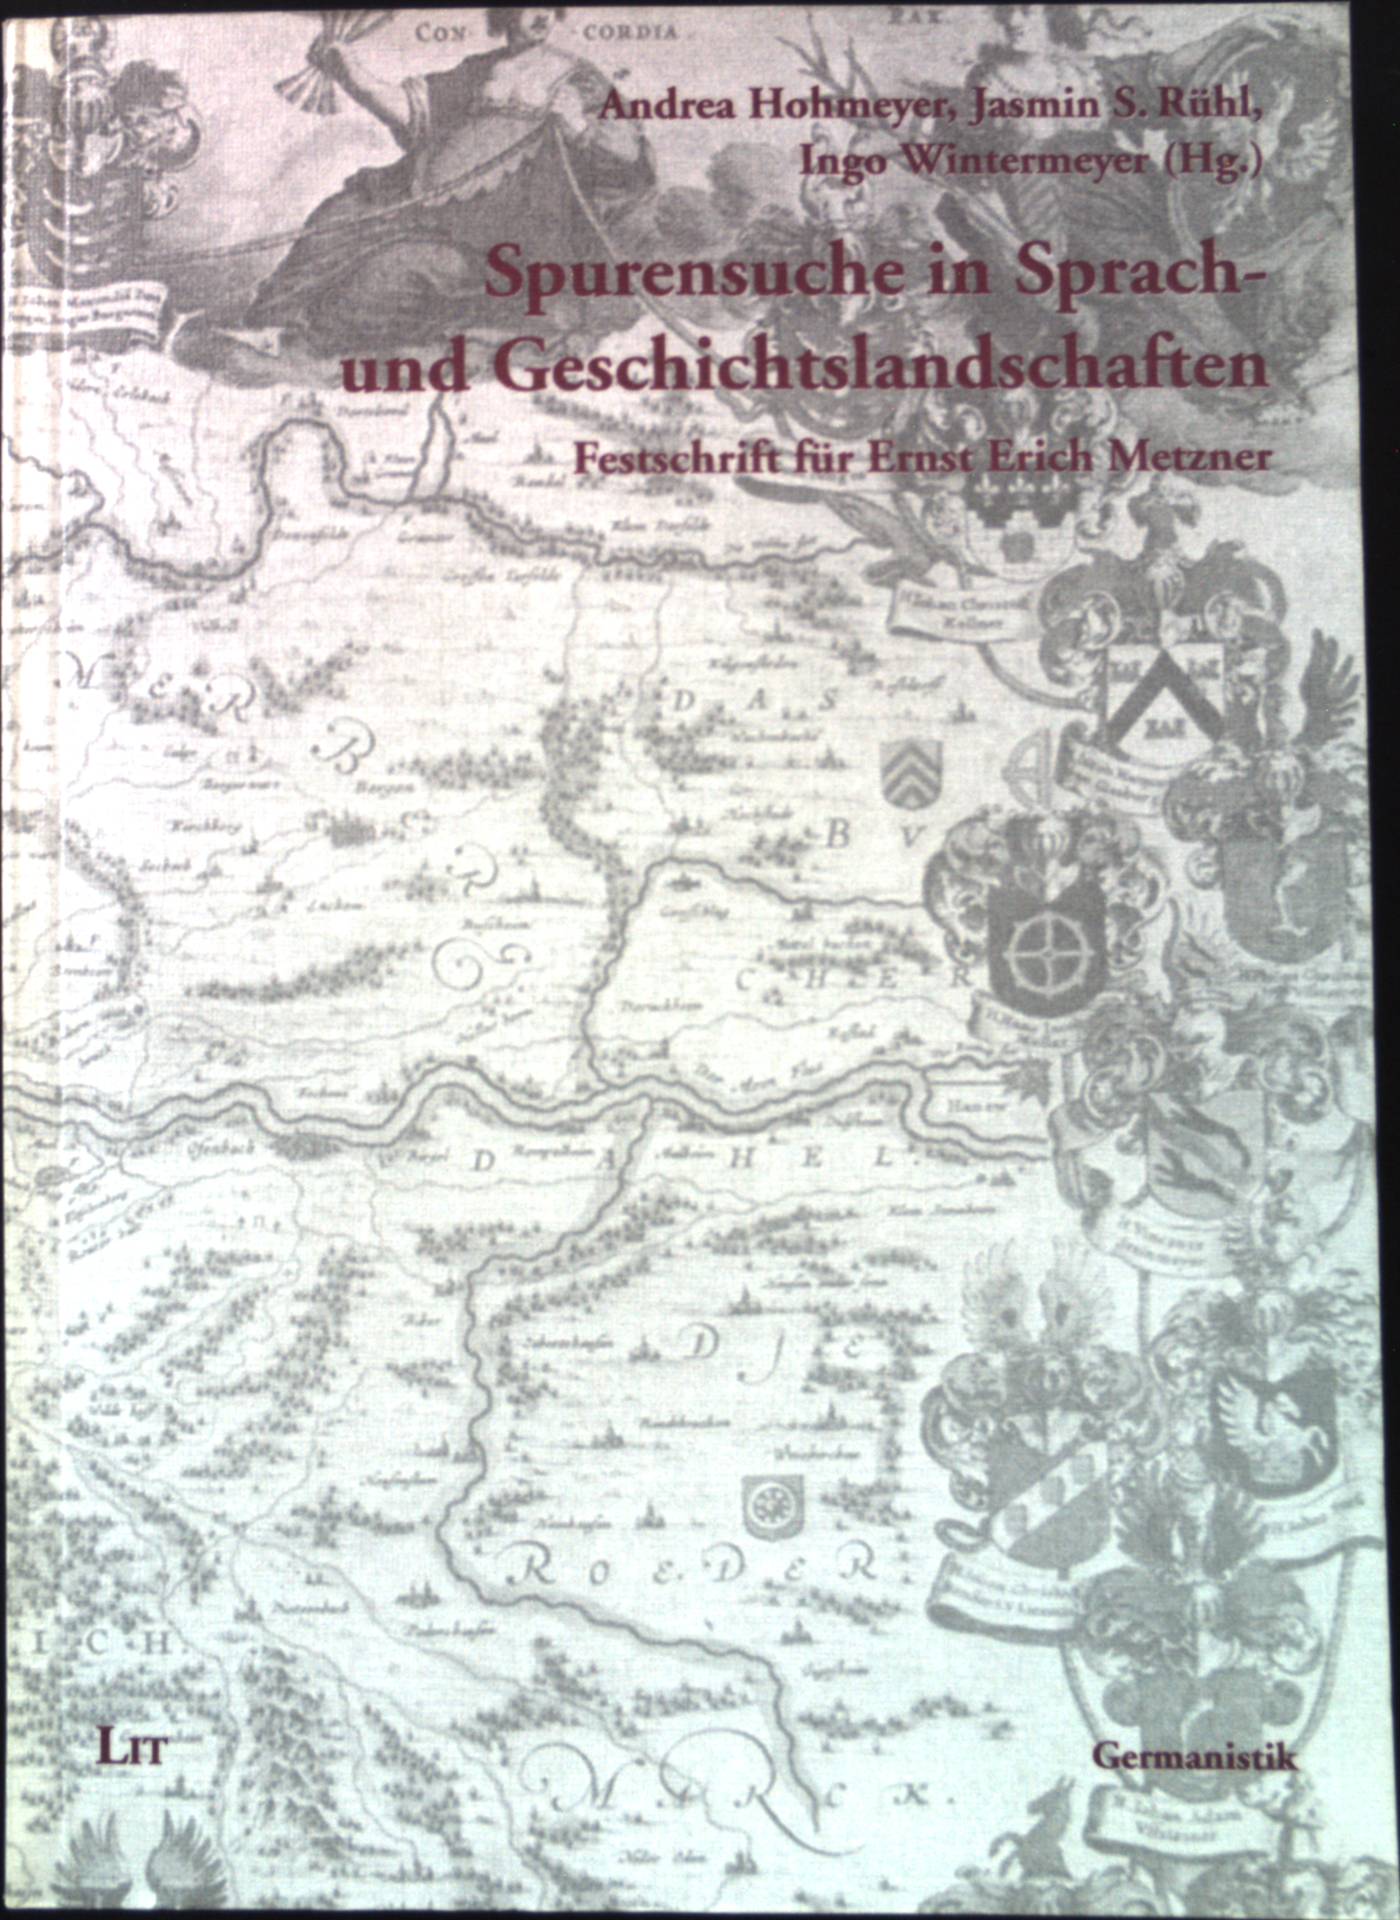 Spurensuche in Sprach- und Geschichtslandschaften : Festschrift für Ernst Erich Metzner. Germanistik ; Bd. 26 - Hohmeyer, Andrea und Ernst Erich Metzner